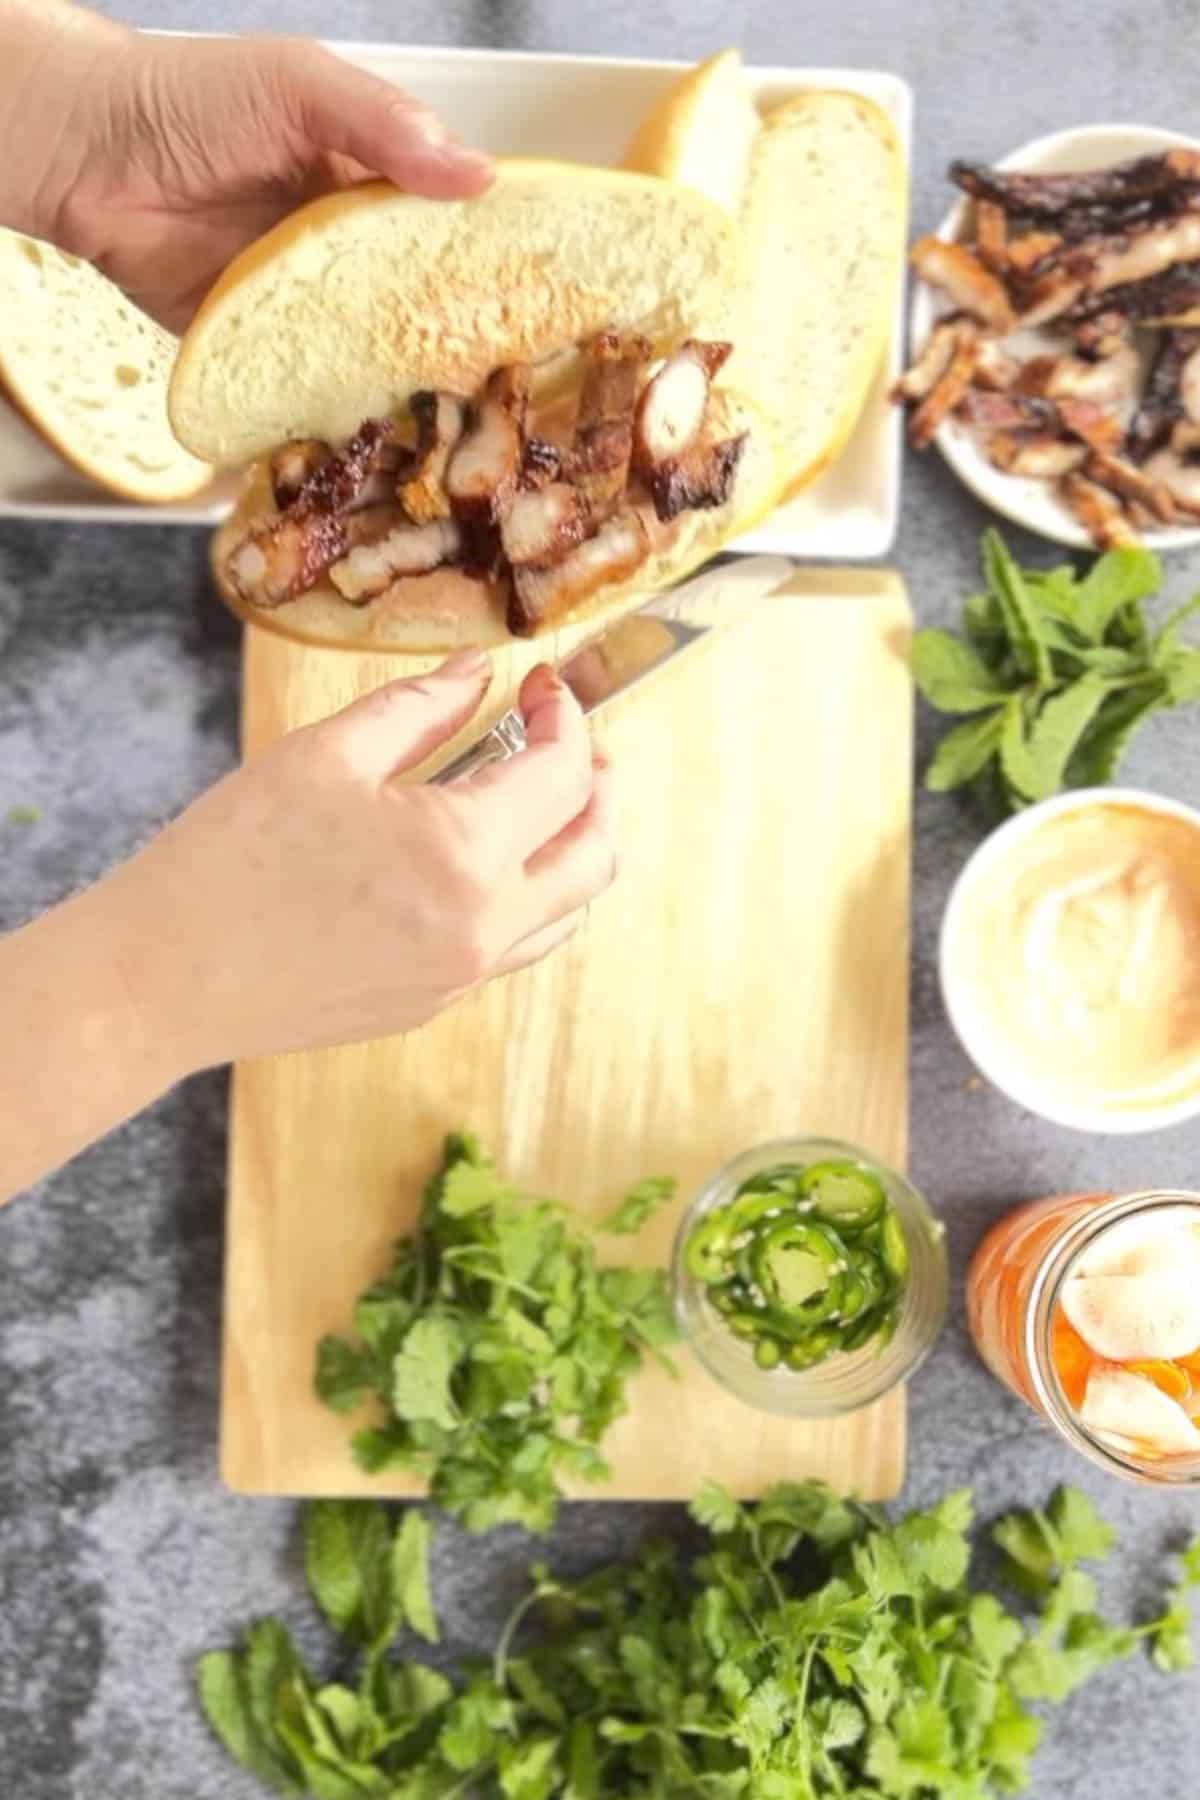 A person is preparing a pork belly banh mi sandwich on a cutting board.